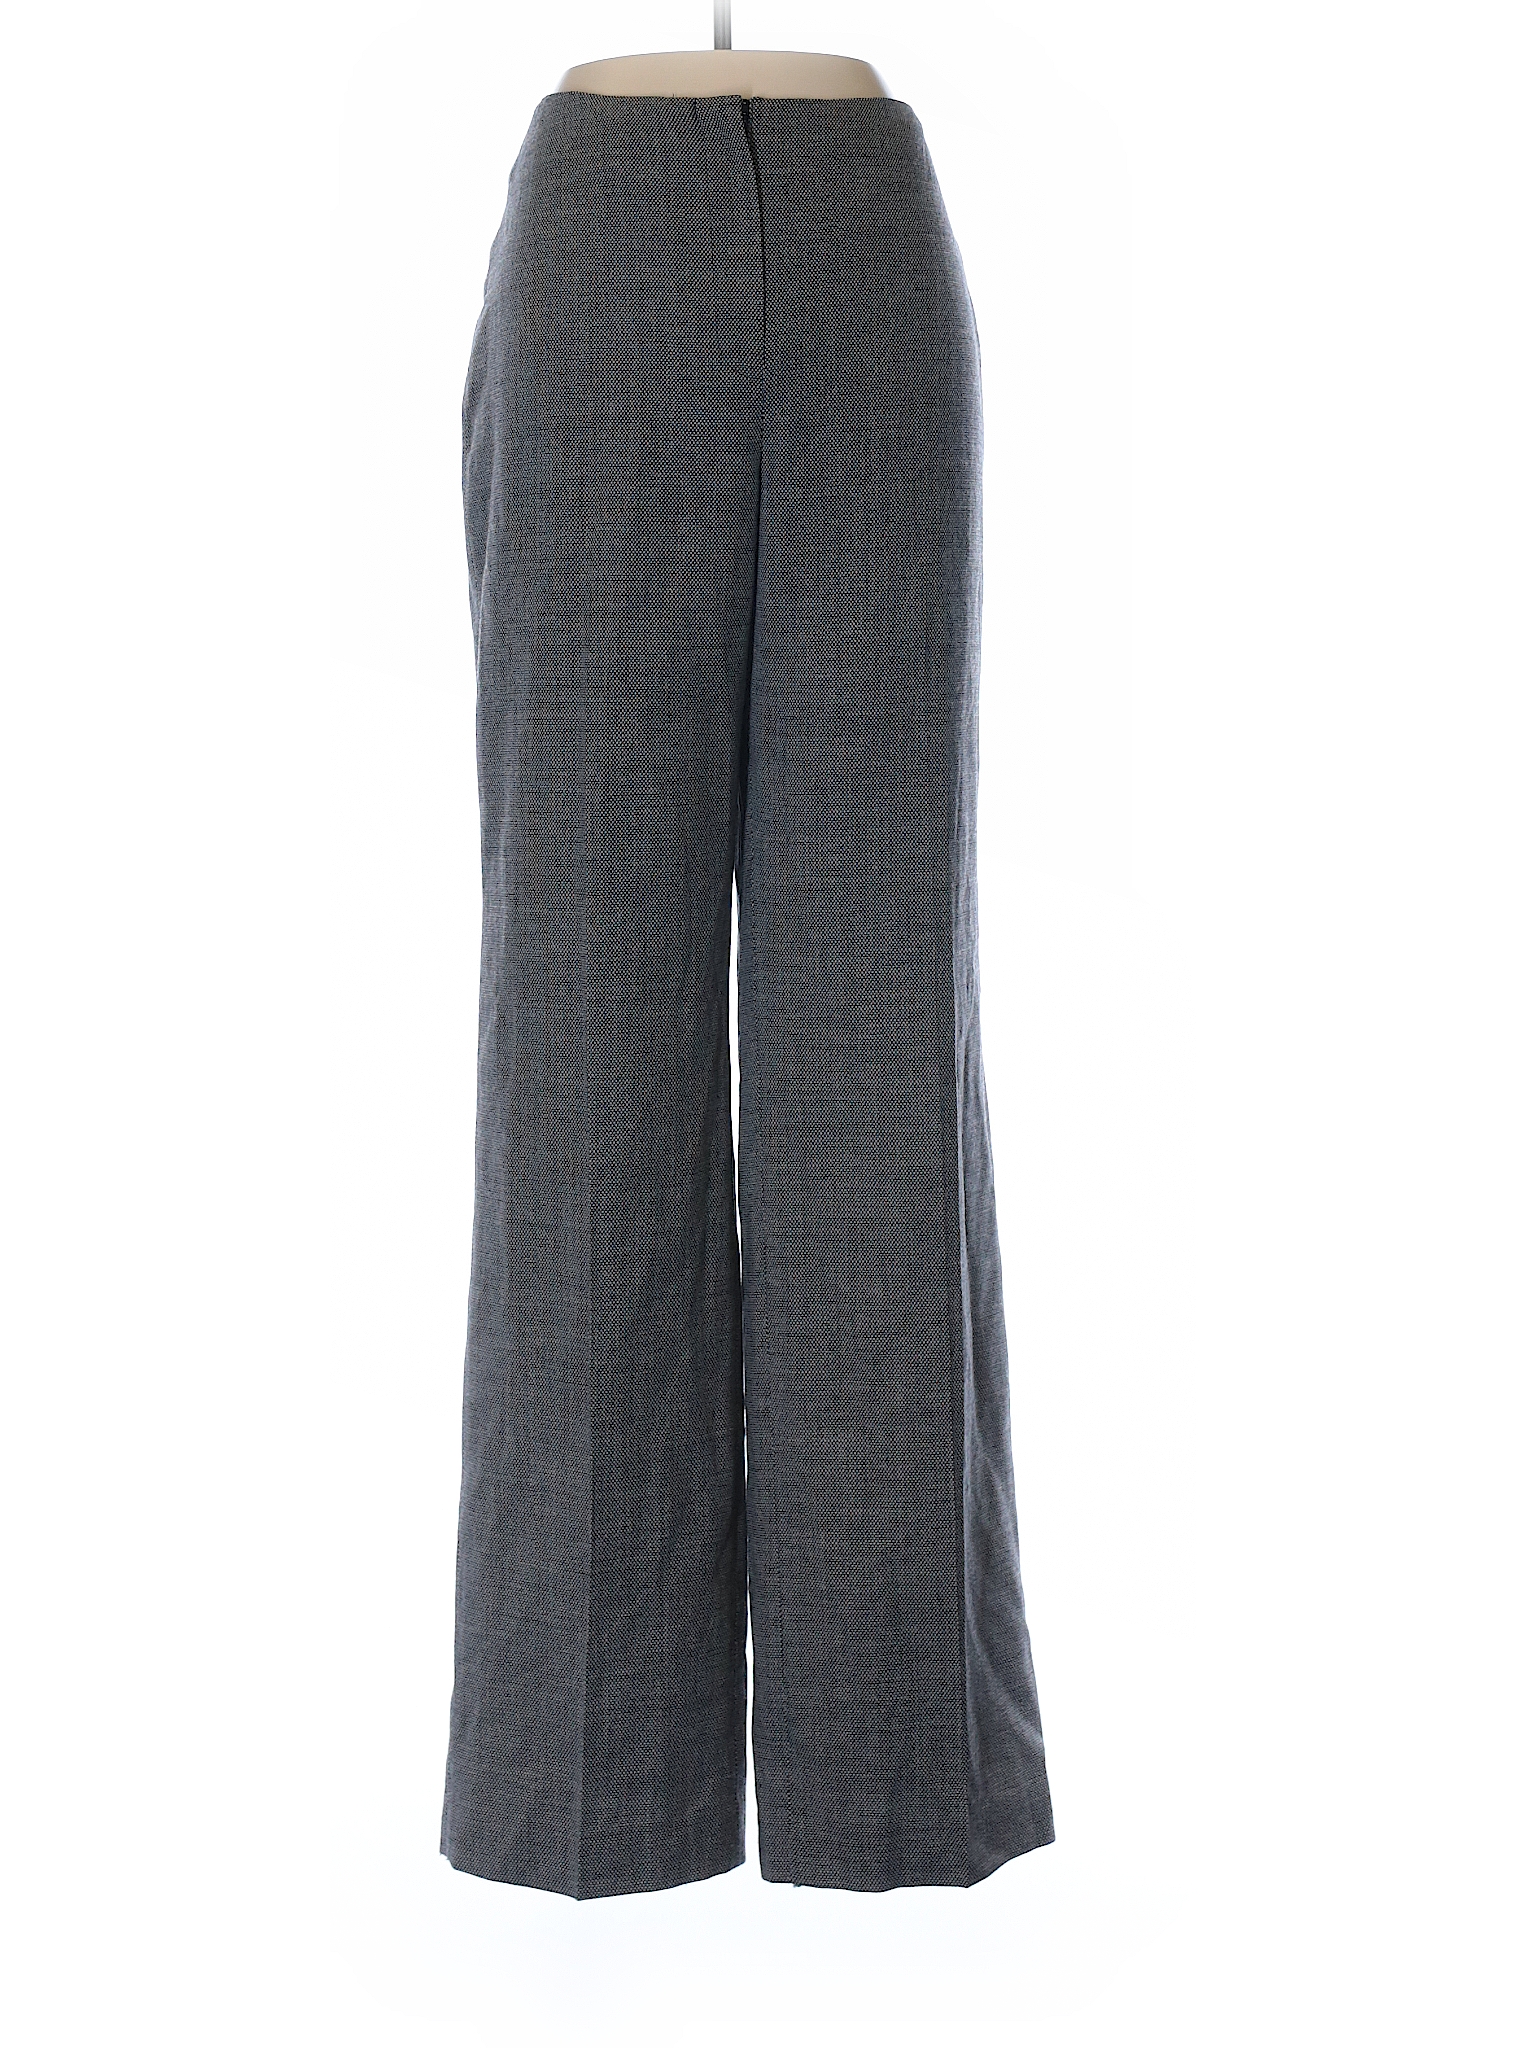 Louben Women Gray Wool Pants 10 | eBay